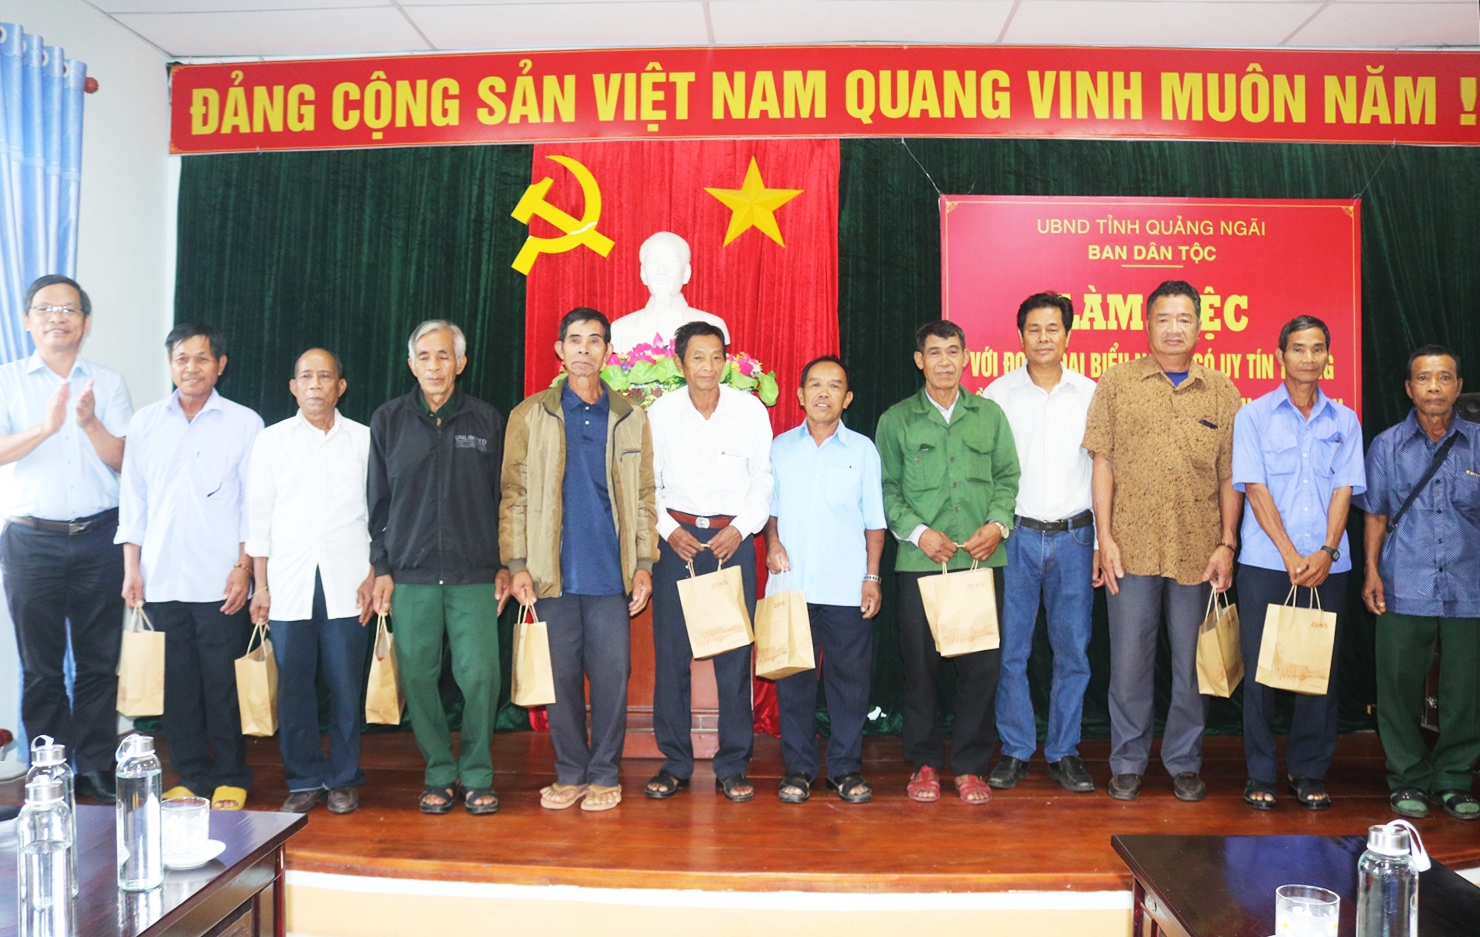 Ông Trần Văn Mẫn (bìa trái) - Trưởng Ban Dân tộc tỉnh Quảng Ngãi tặng quà cho đại biểu Người có uy tín tỉnh Bình Định